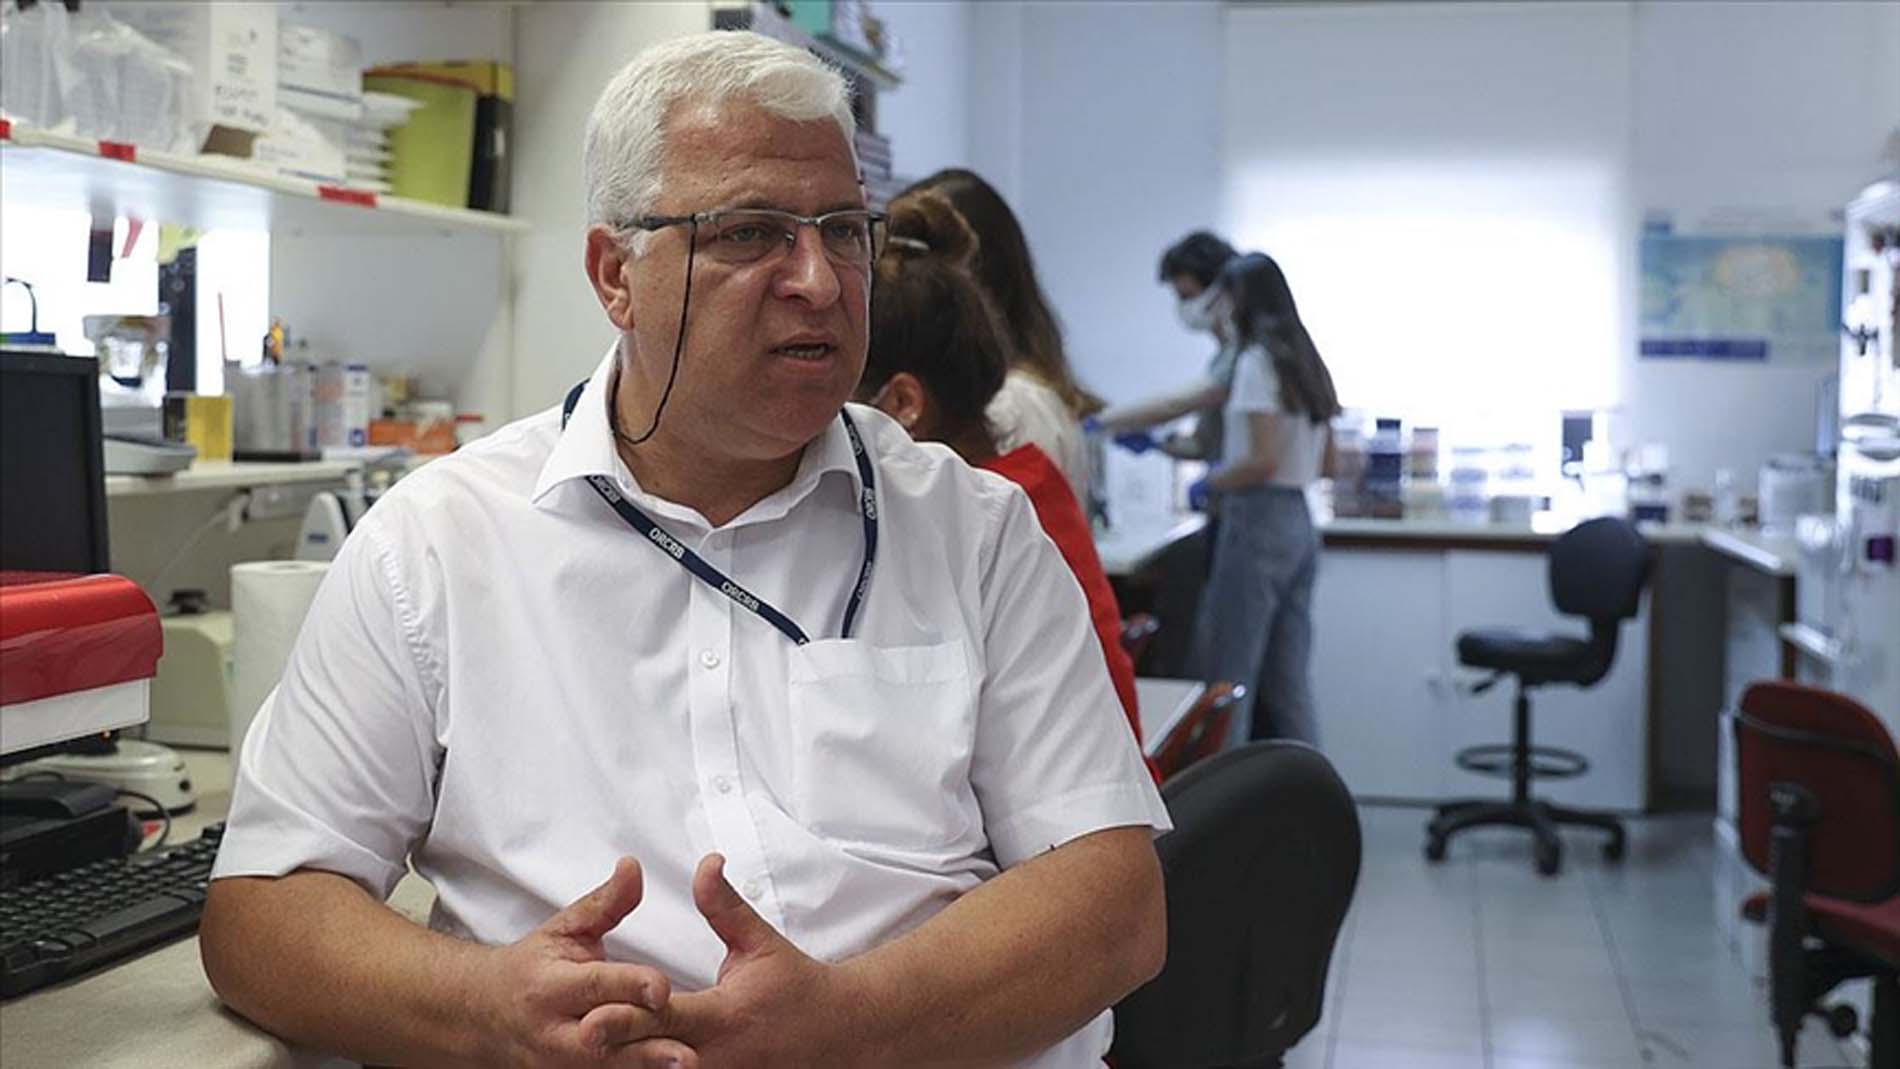 VLP aşısını geliştiren Prof. Dr. İhsan Gürsel duyurdu: Omicron için çalışmalar başladı! Ülkemizin insanları güvenli ve teknolojisi yüksek aşılarla aşılanmalı